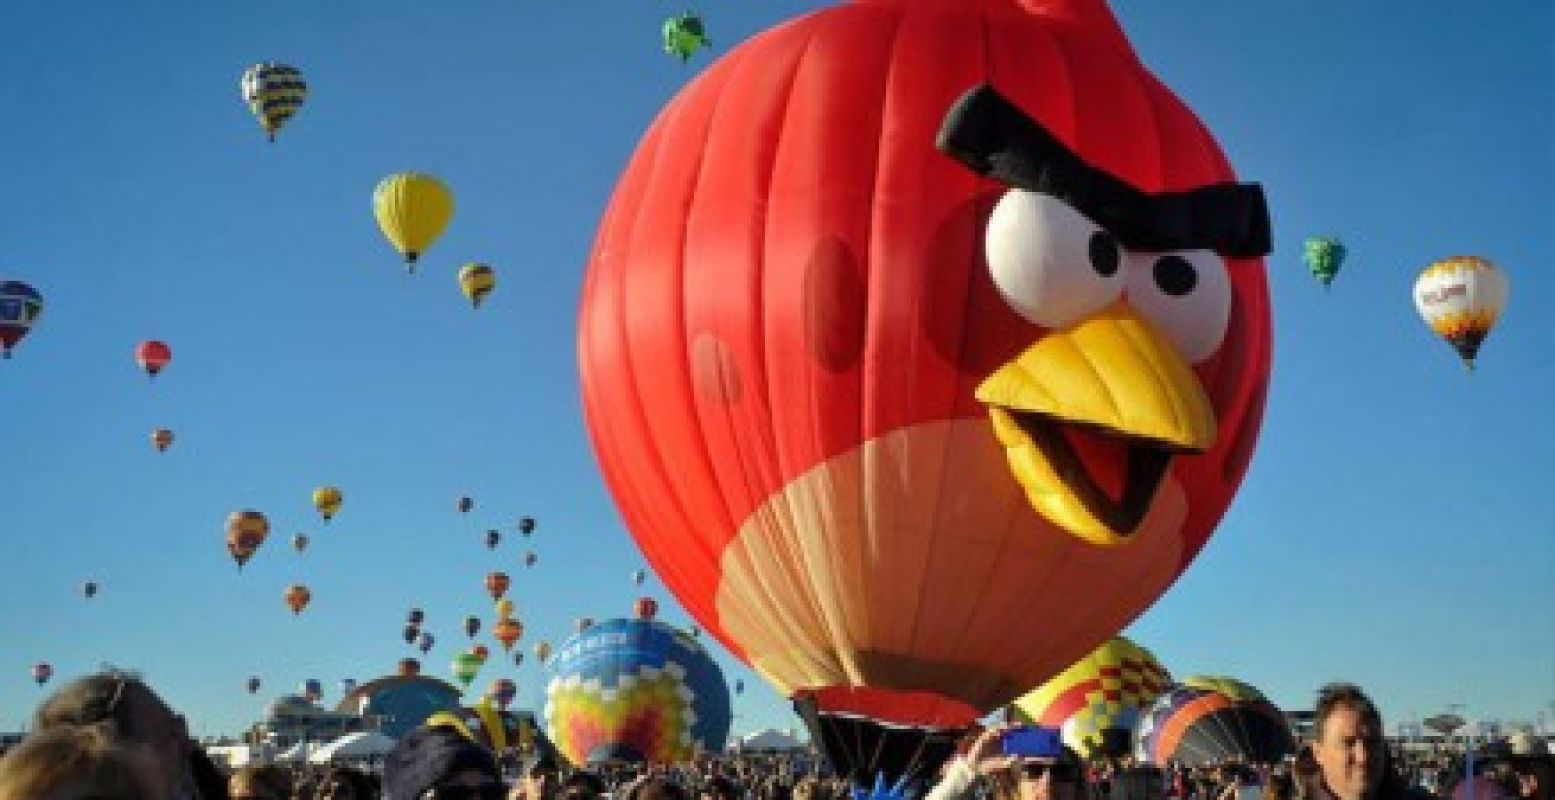 Ieder jaar zijn er andere special shape-ballonnen te bewonderen tijdens de Ballonfiësta Barneveld. Foto: Ballonfiësta Barneveld